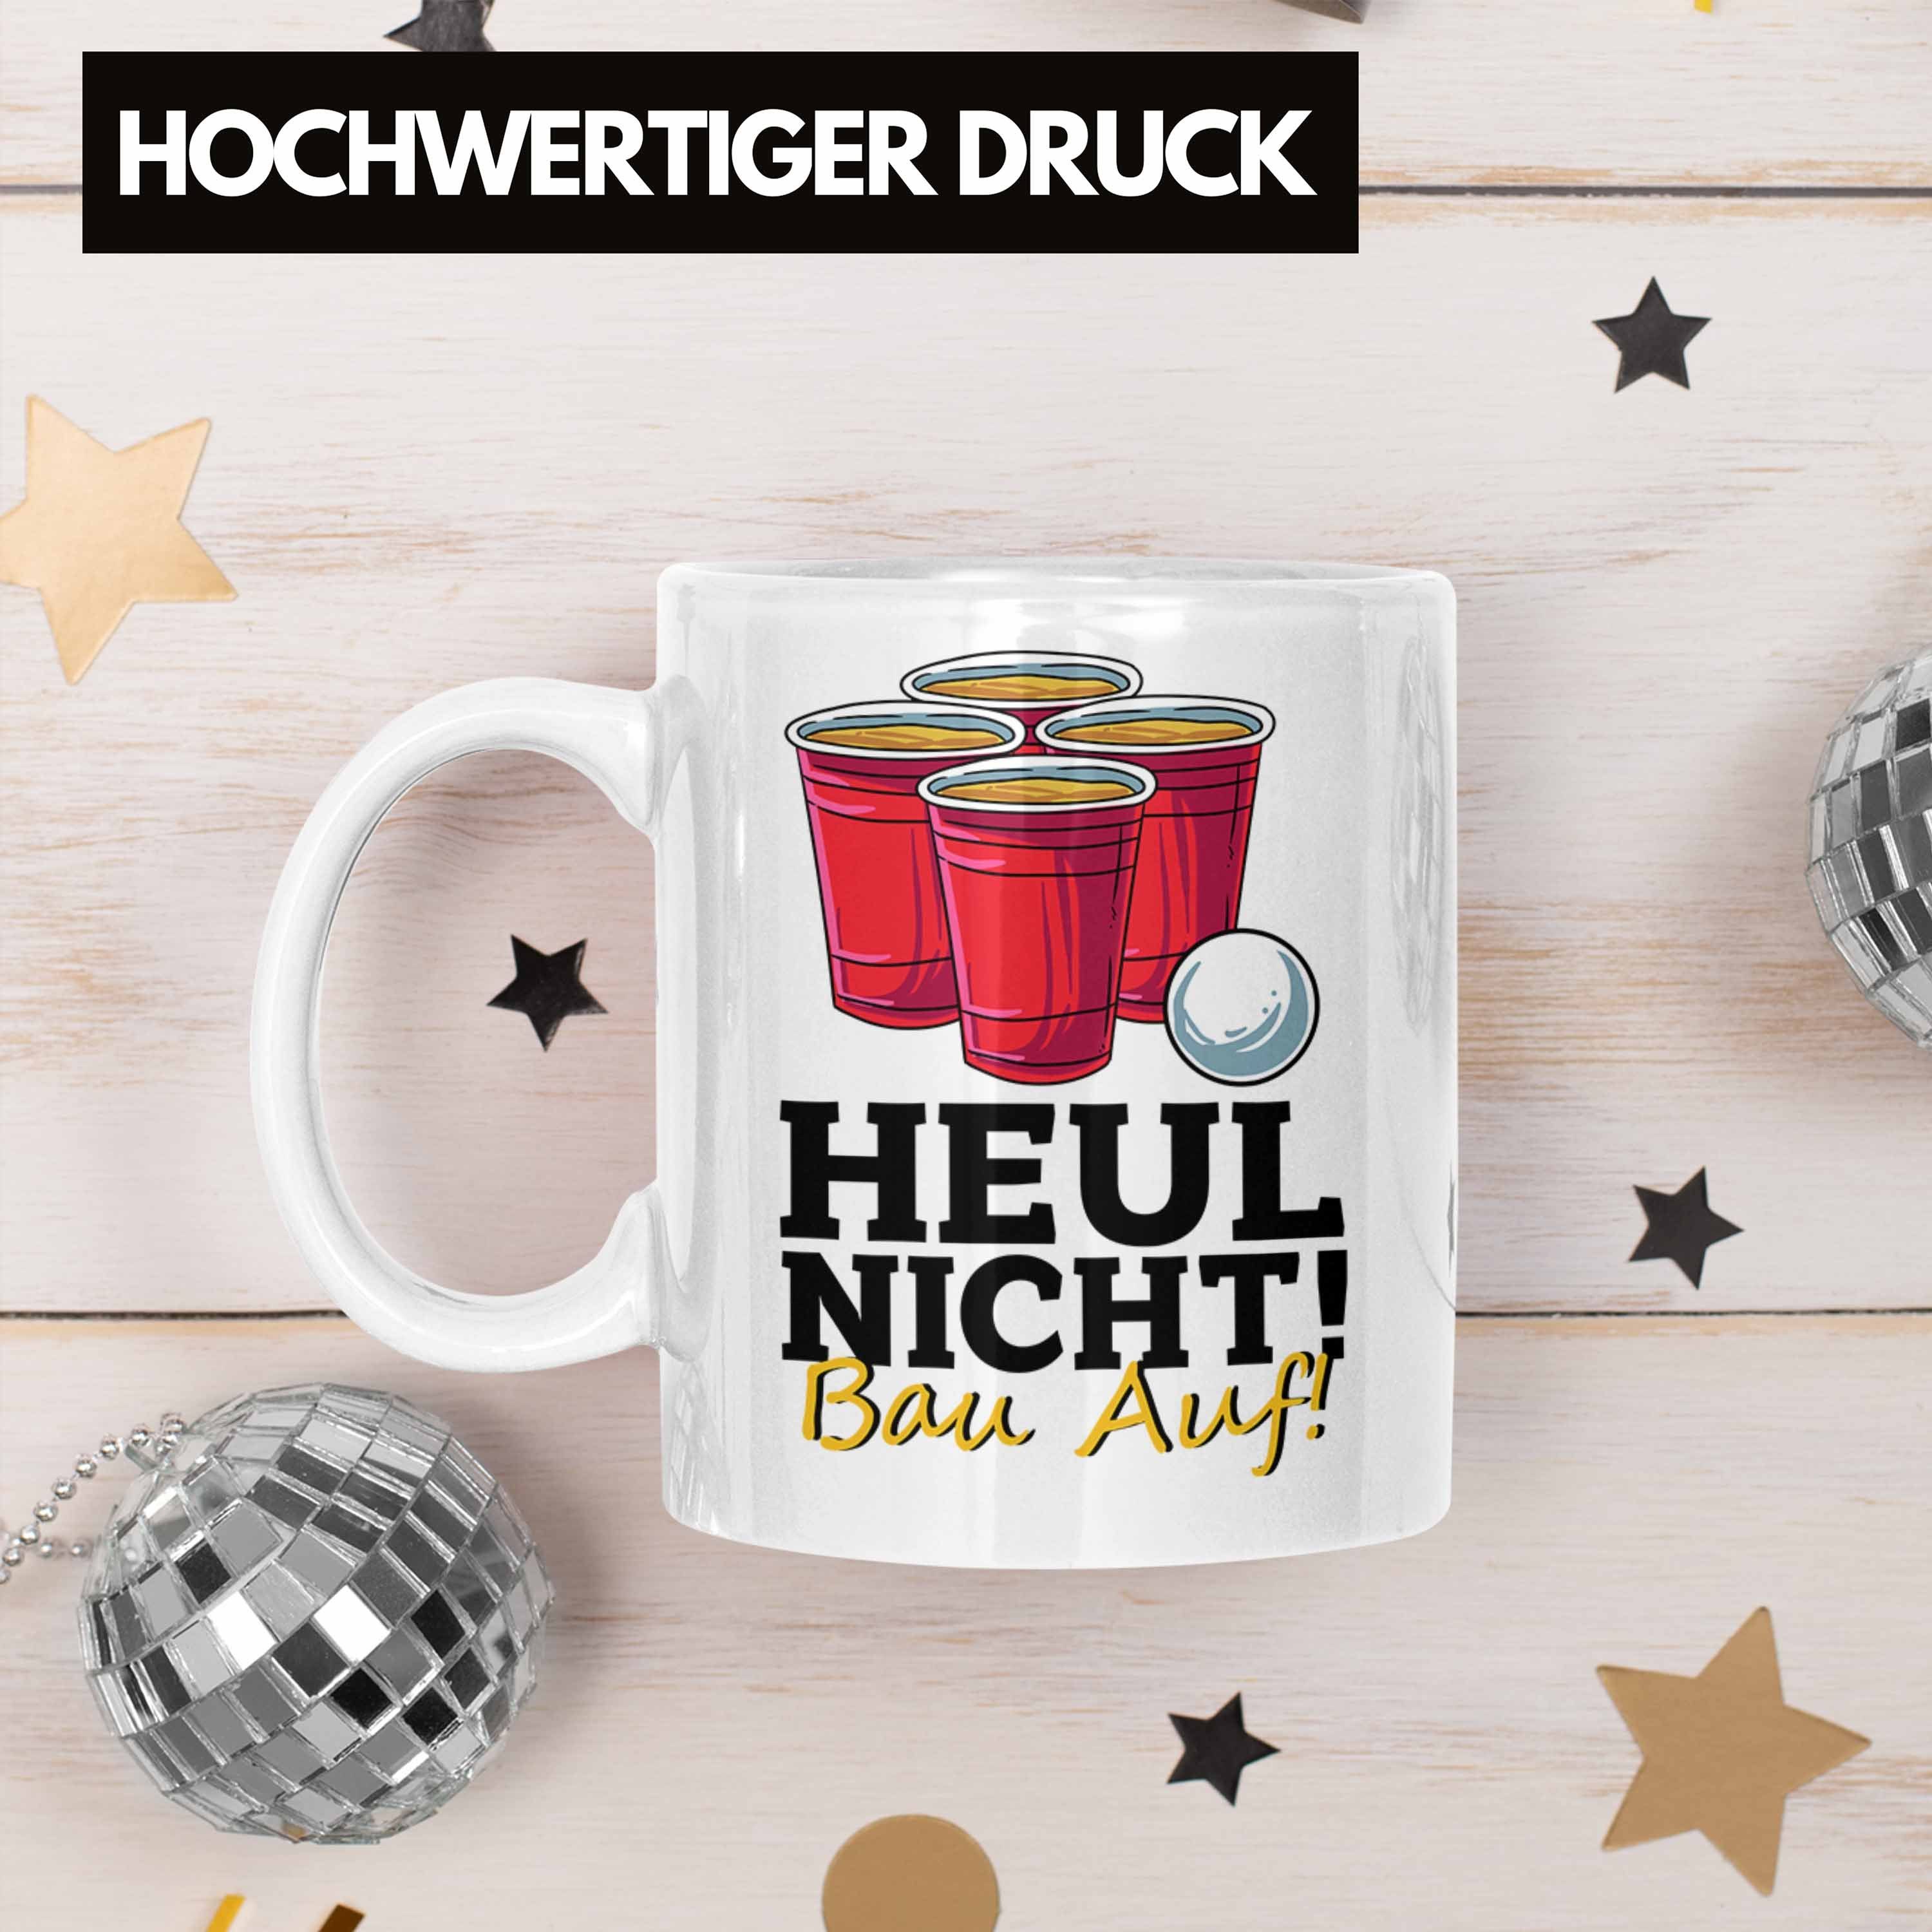 Trendation Tasse Lustige "Heul Beer Weiss Fans Nicht Bau Auf" Bierpong Tasse für Pong